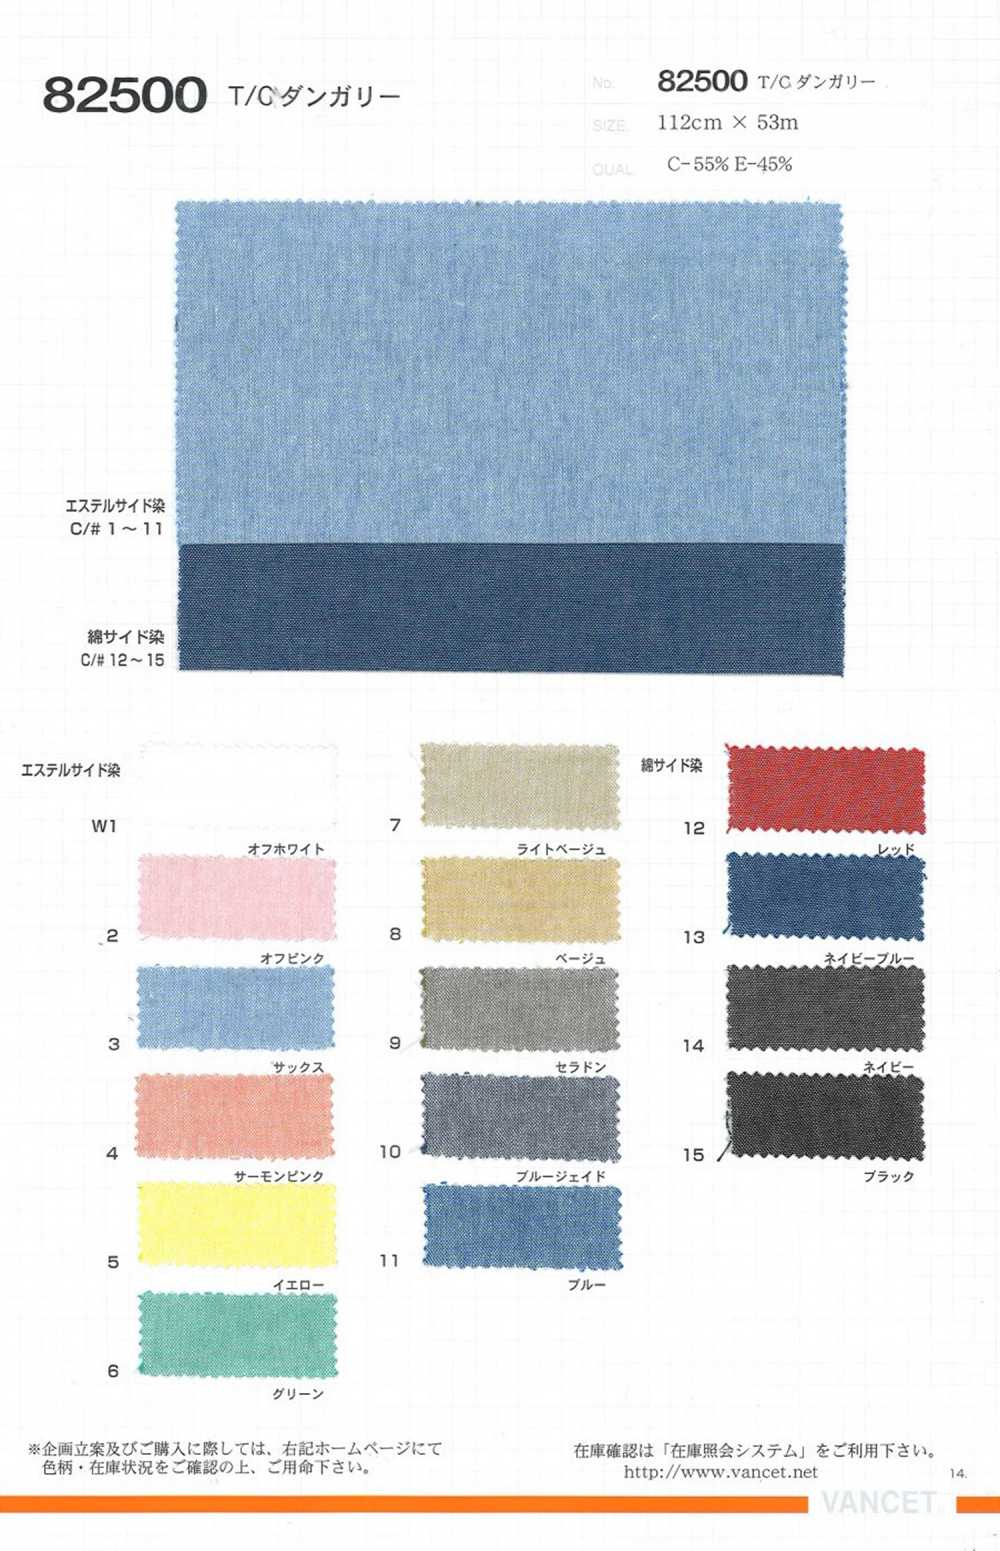 82500 T / C Dungaree[Textile / Fabric] VANCET